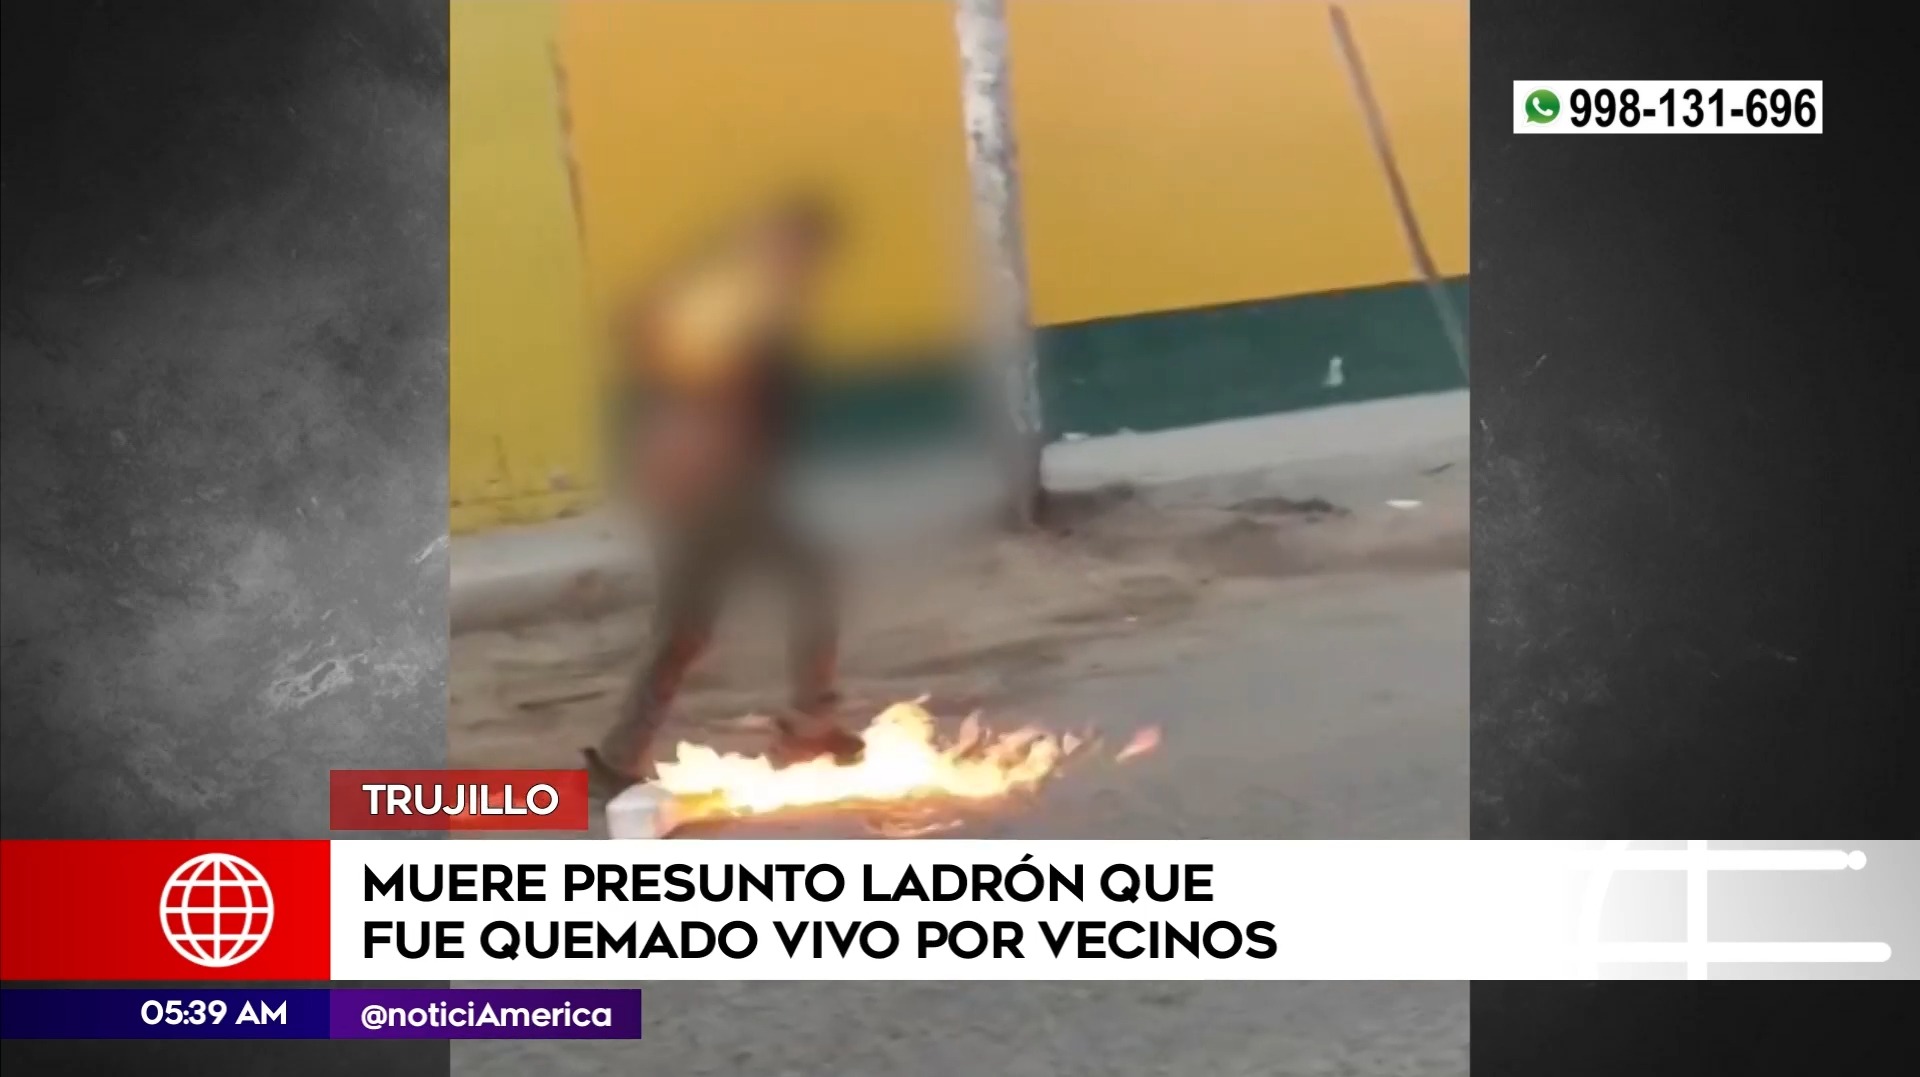 Murió presunto ladrón que fue quemado vivo por vecinos en Trujillo. Foto: América Noticias